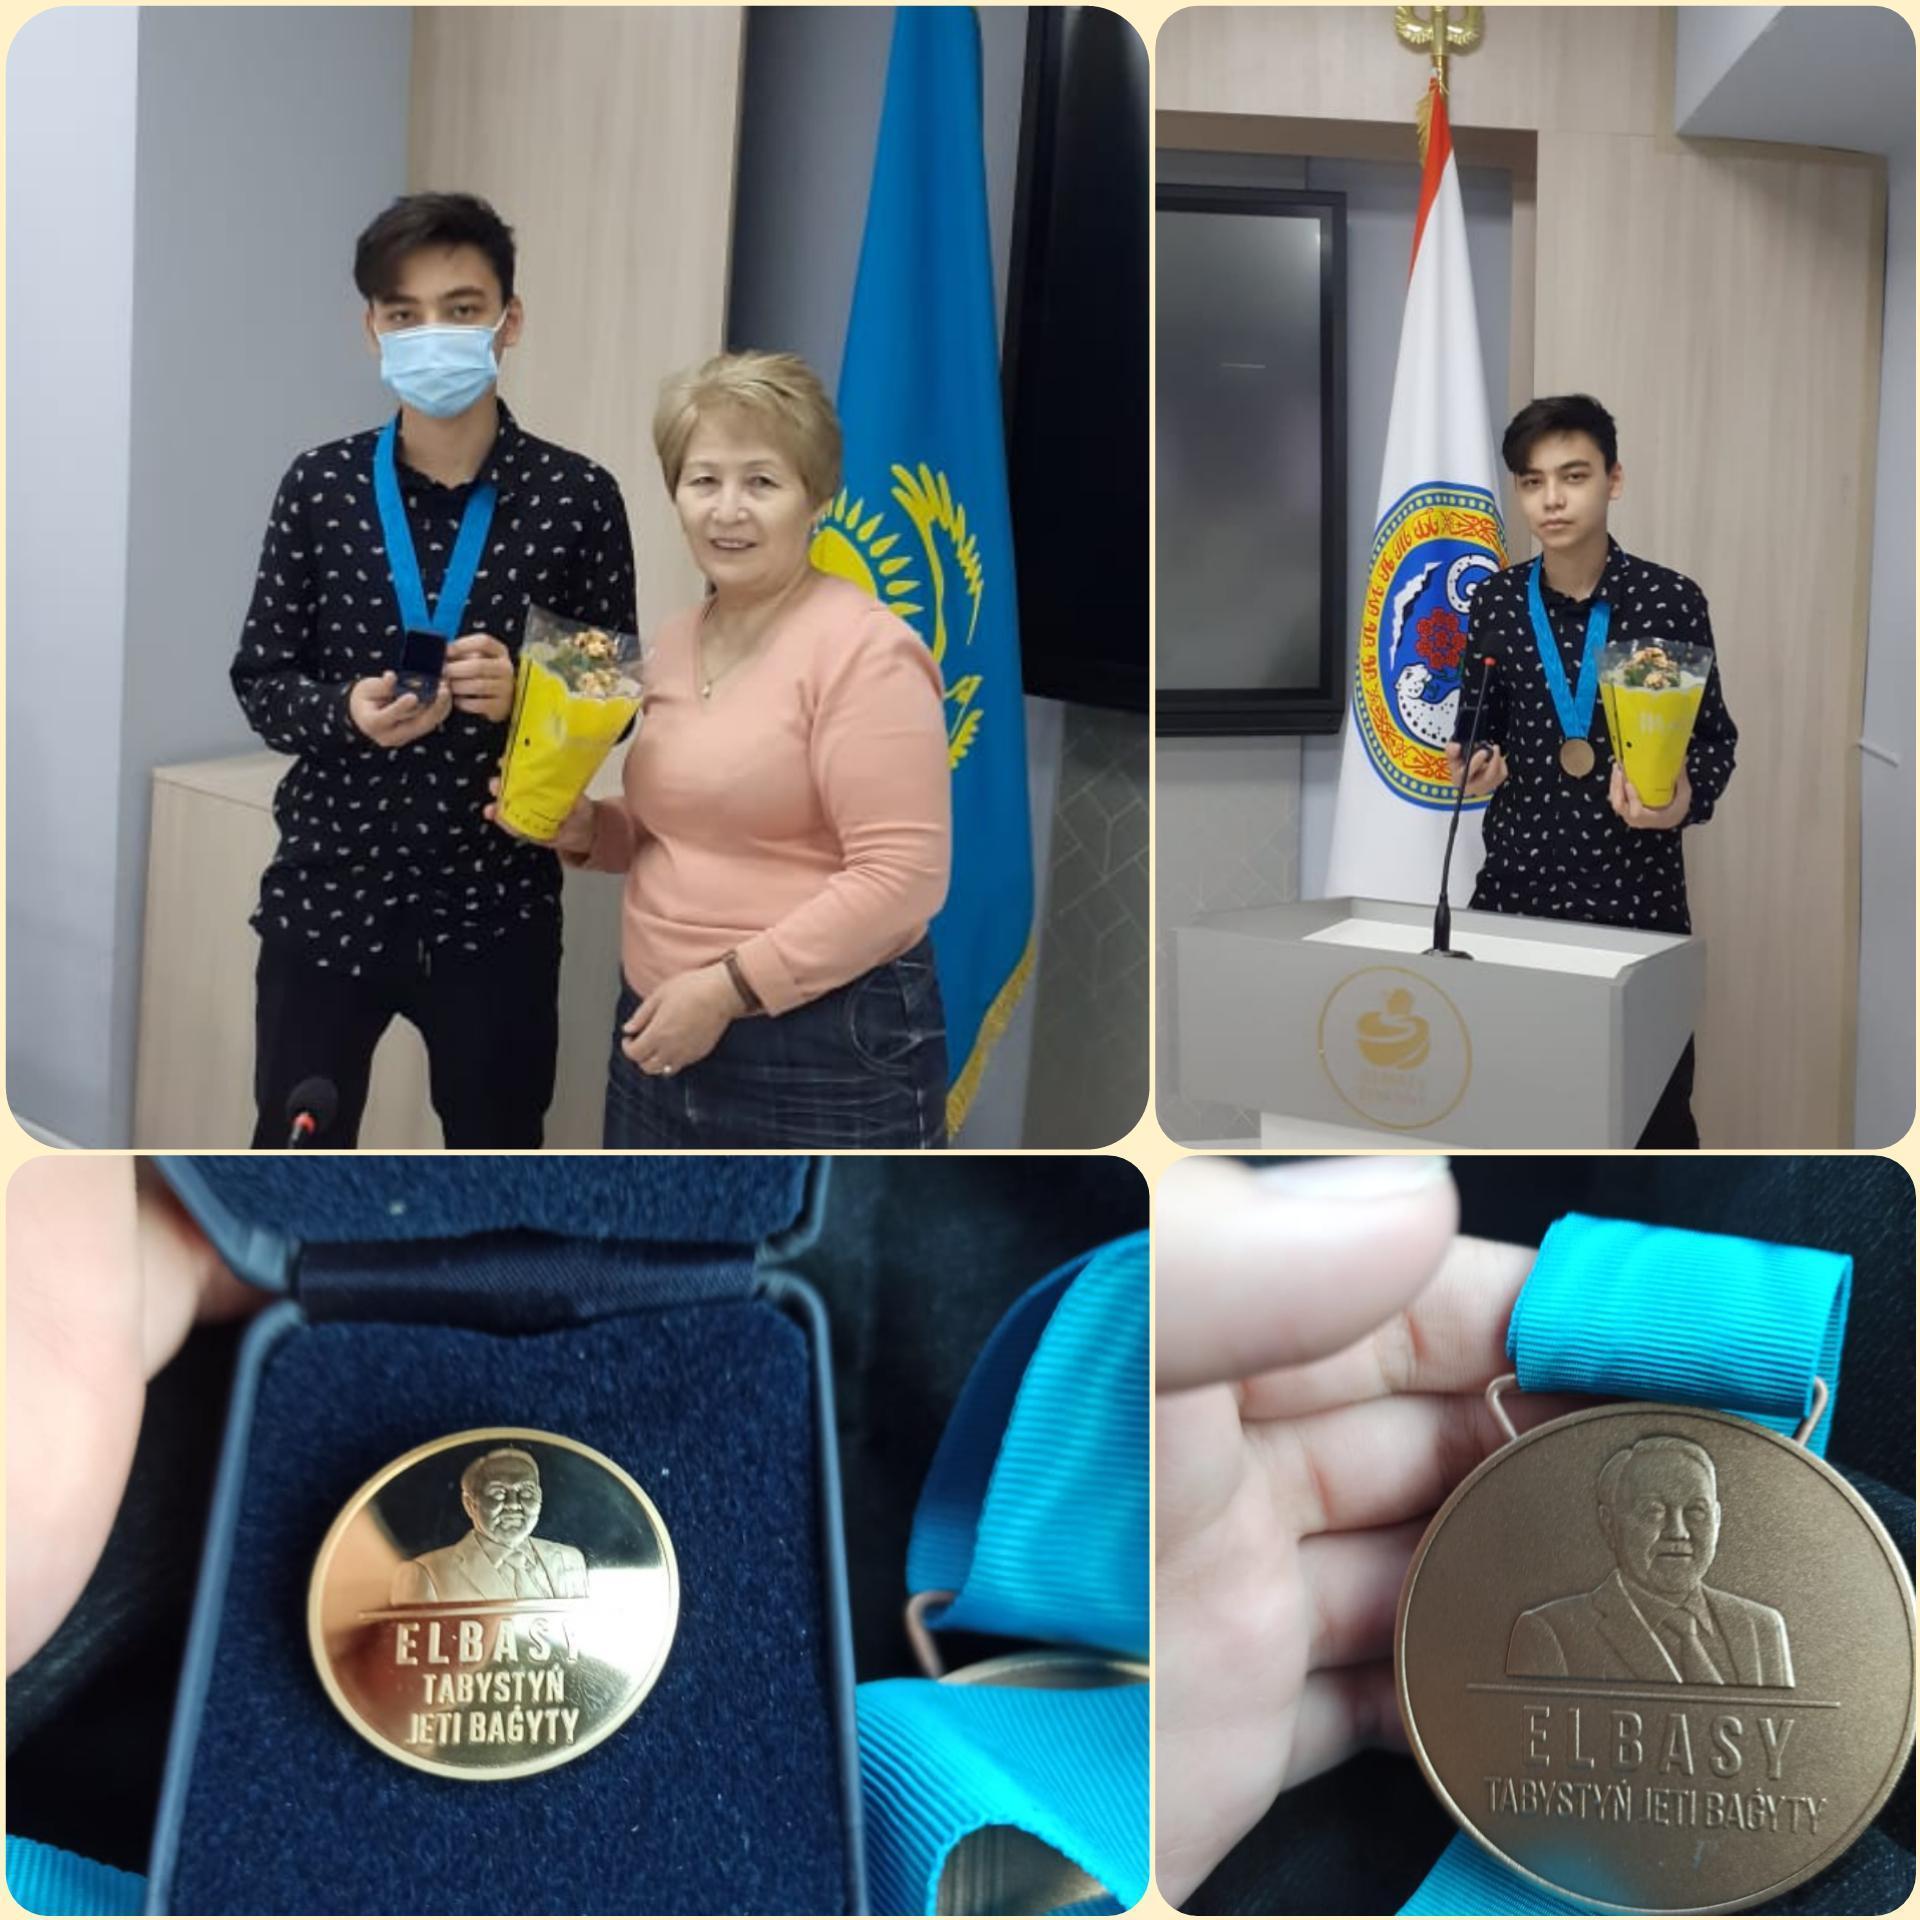 Обладатель бронзовой "Медали Елбасы" ученик  9 класса Аканаев Бексултан